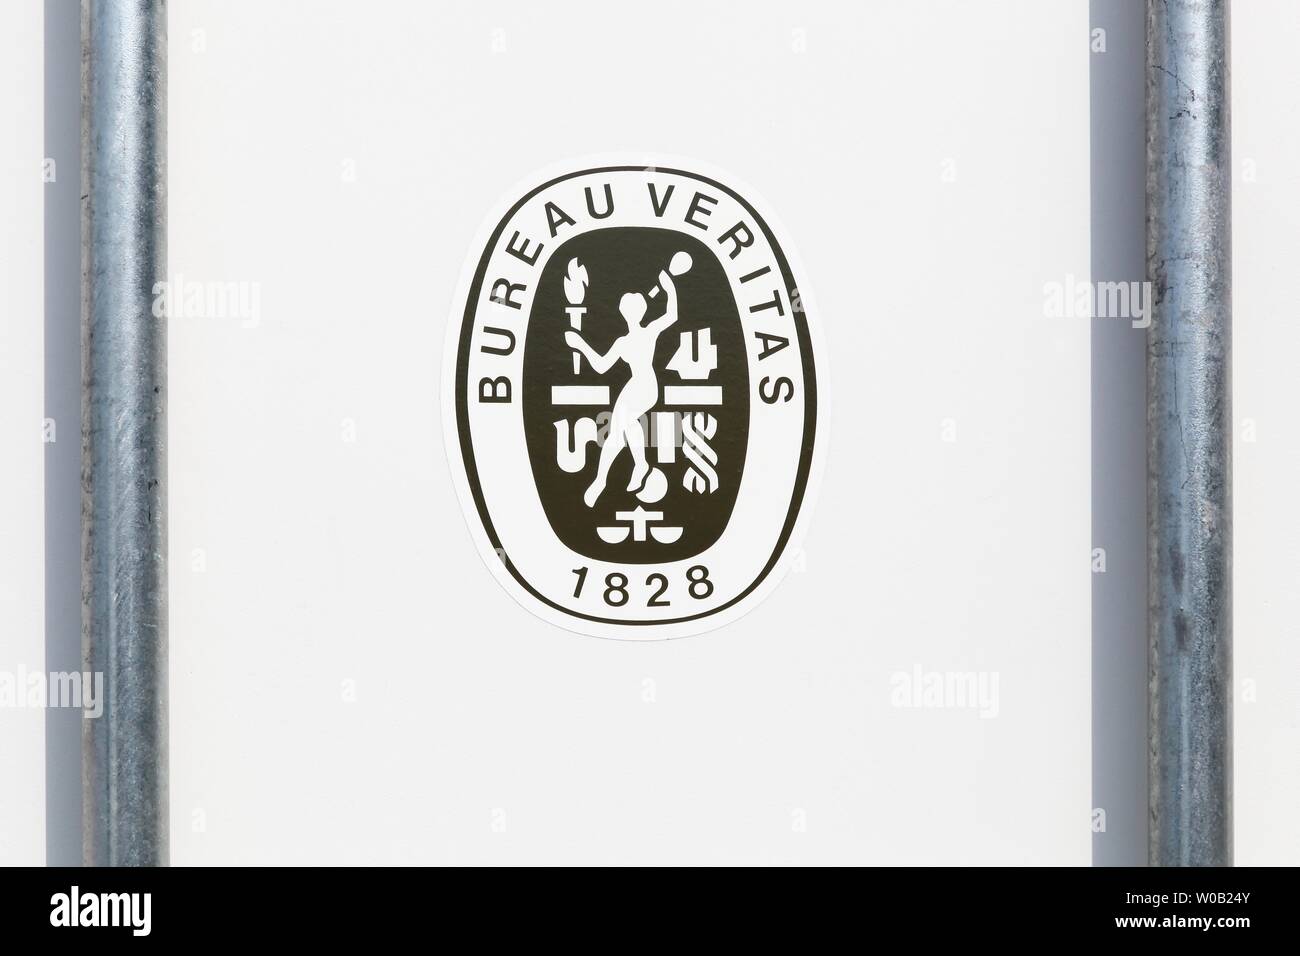 Viby, Danemark - 5 juin 2019 : Bureau Veritas logo sur un récipient. Bureau Veritas est un organisme international de certification Banque D'Images